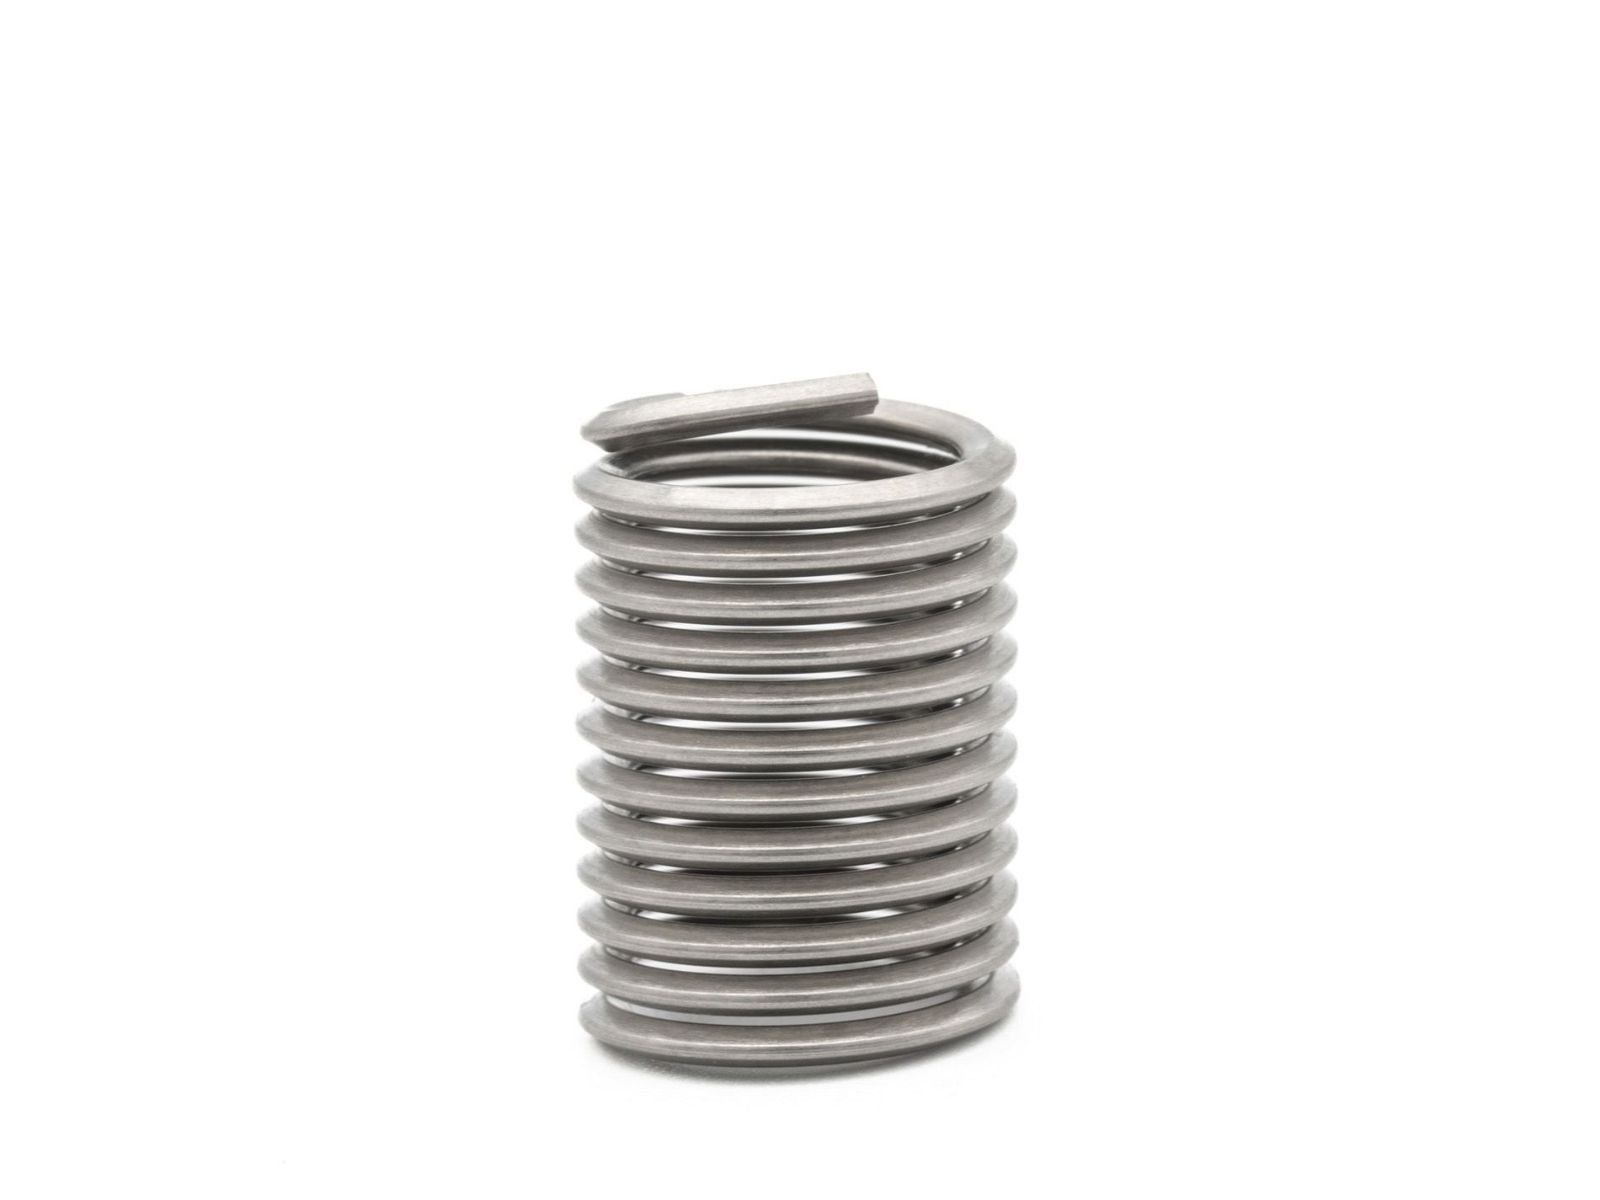 BaerCoil Wire Thread Inserts UNF 5/8 x 18 - 2.0 D (31.75 mm) - free running - 50 pcs.